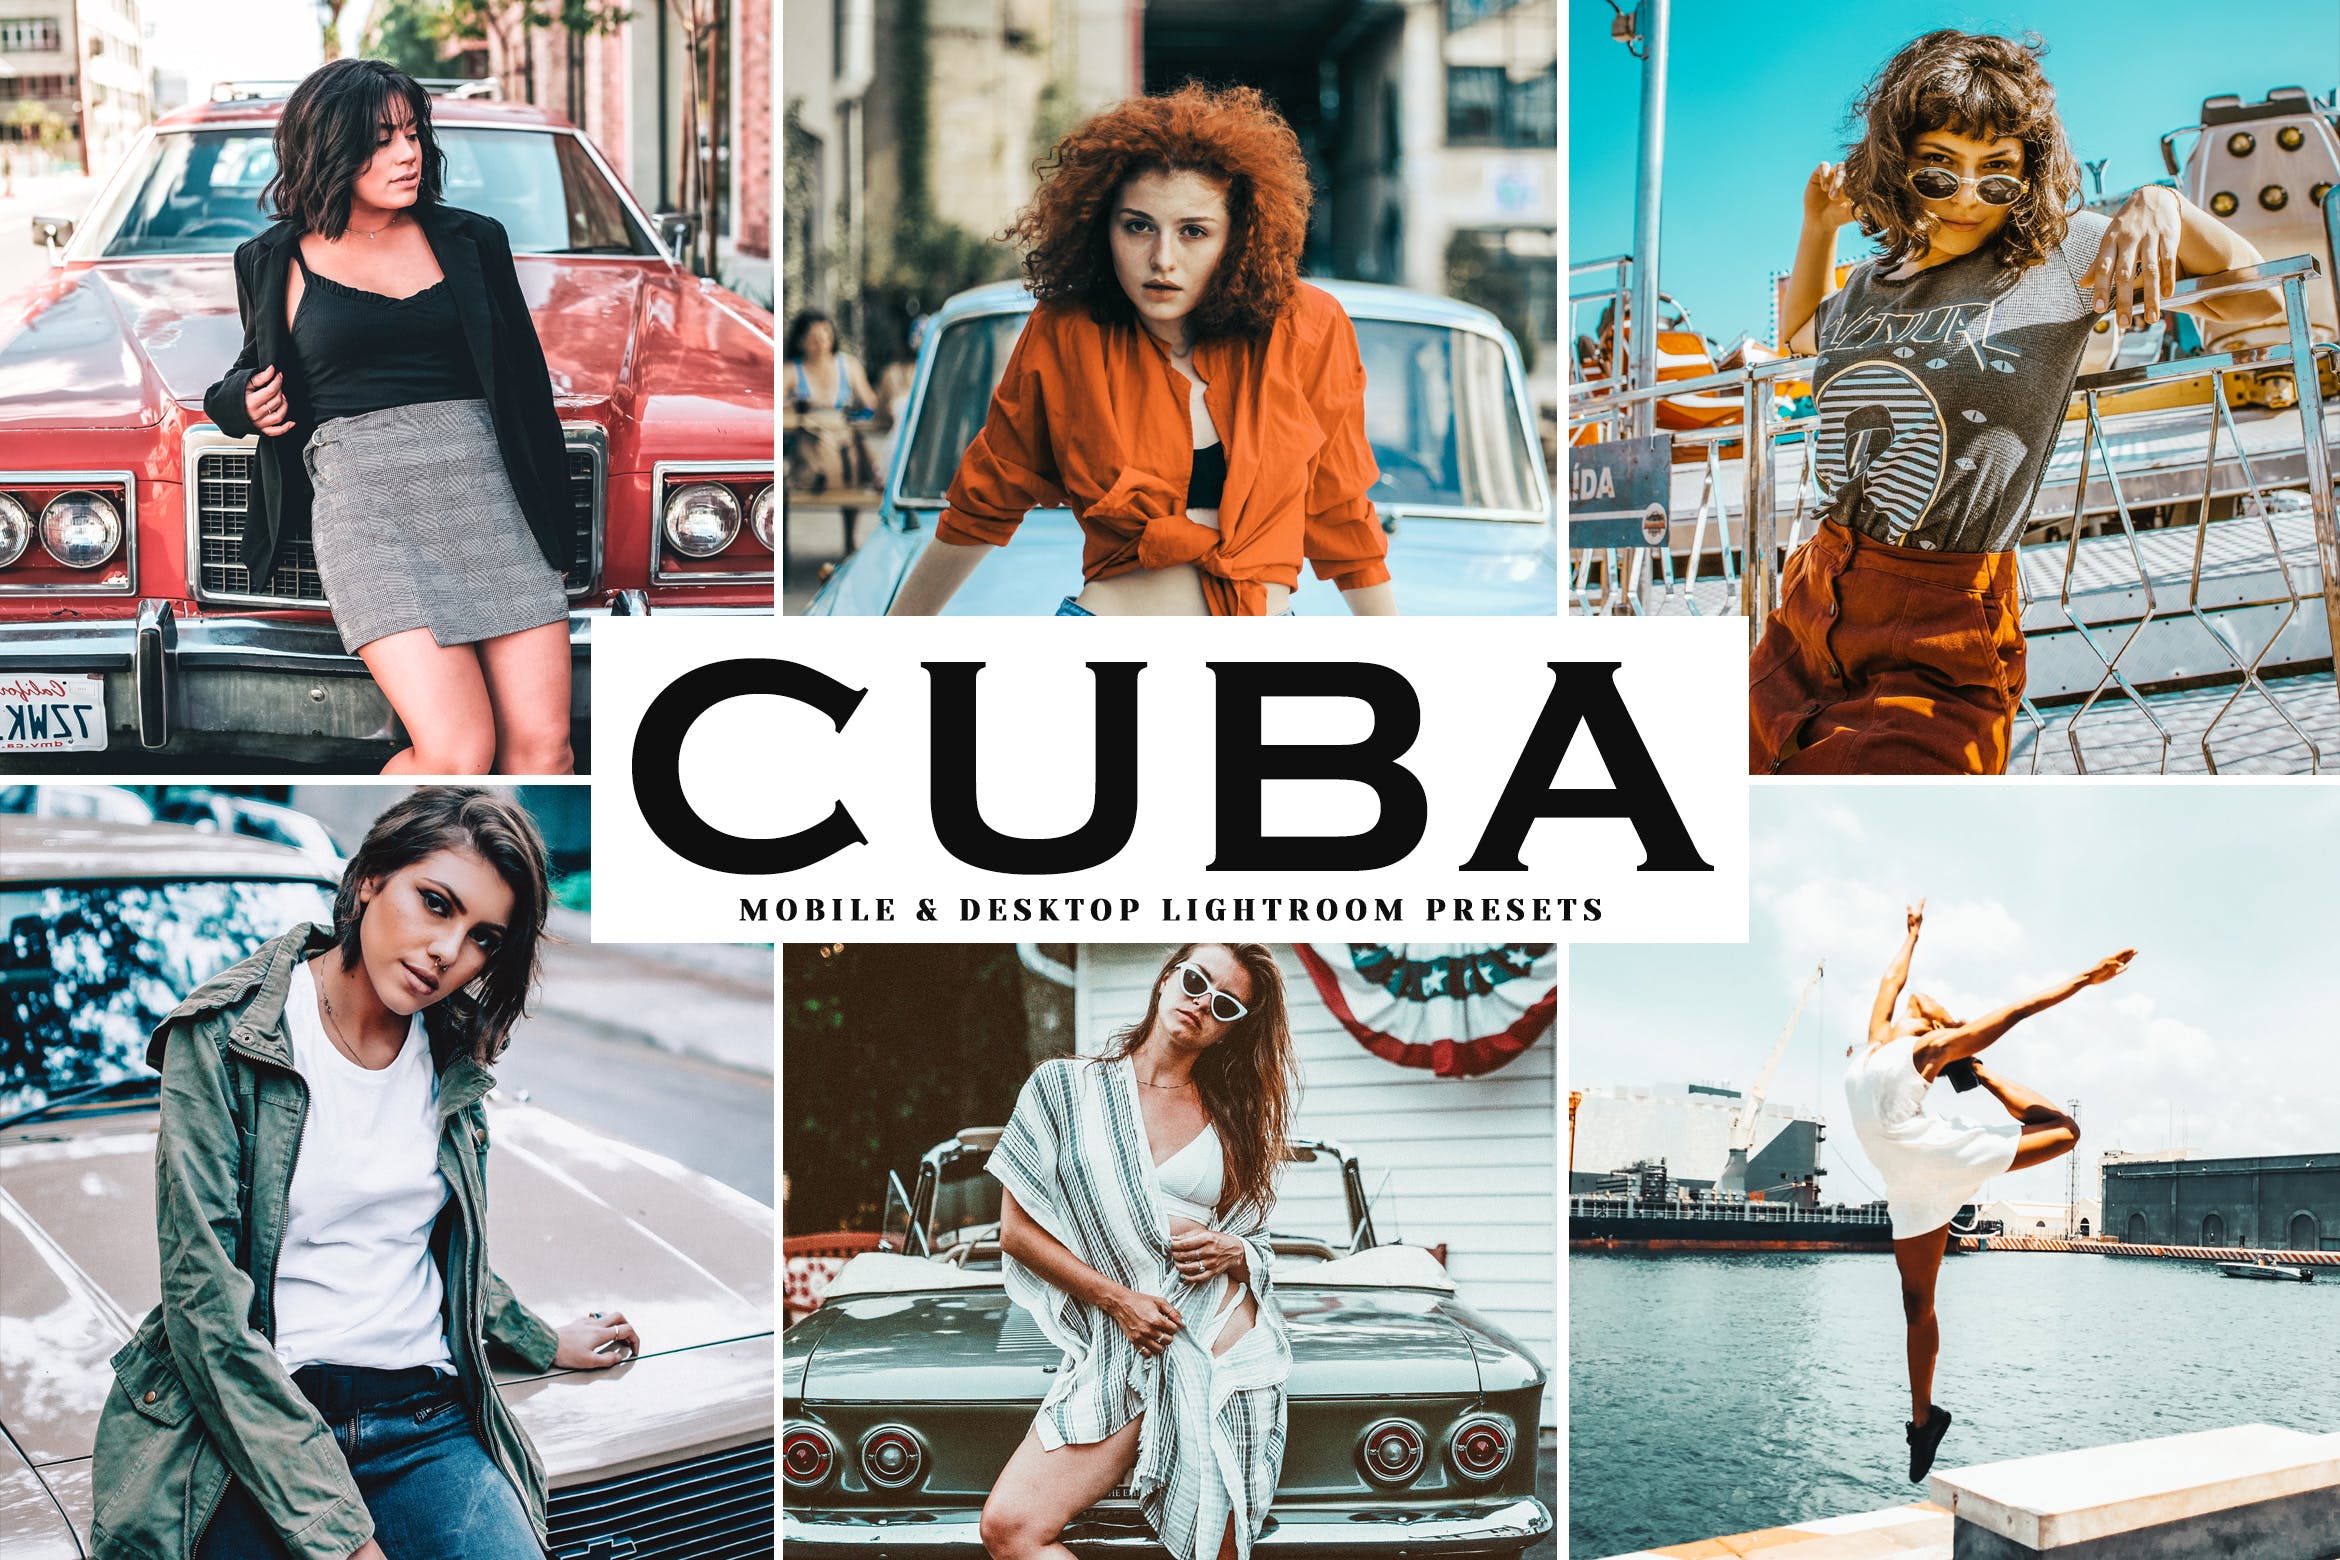 复古风格照片调色滤镜16素材精选LR预设 Cuba Mobile & Desktop Lightroom Presets插图